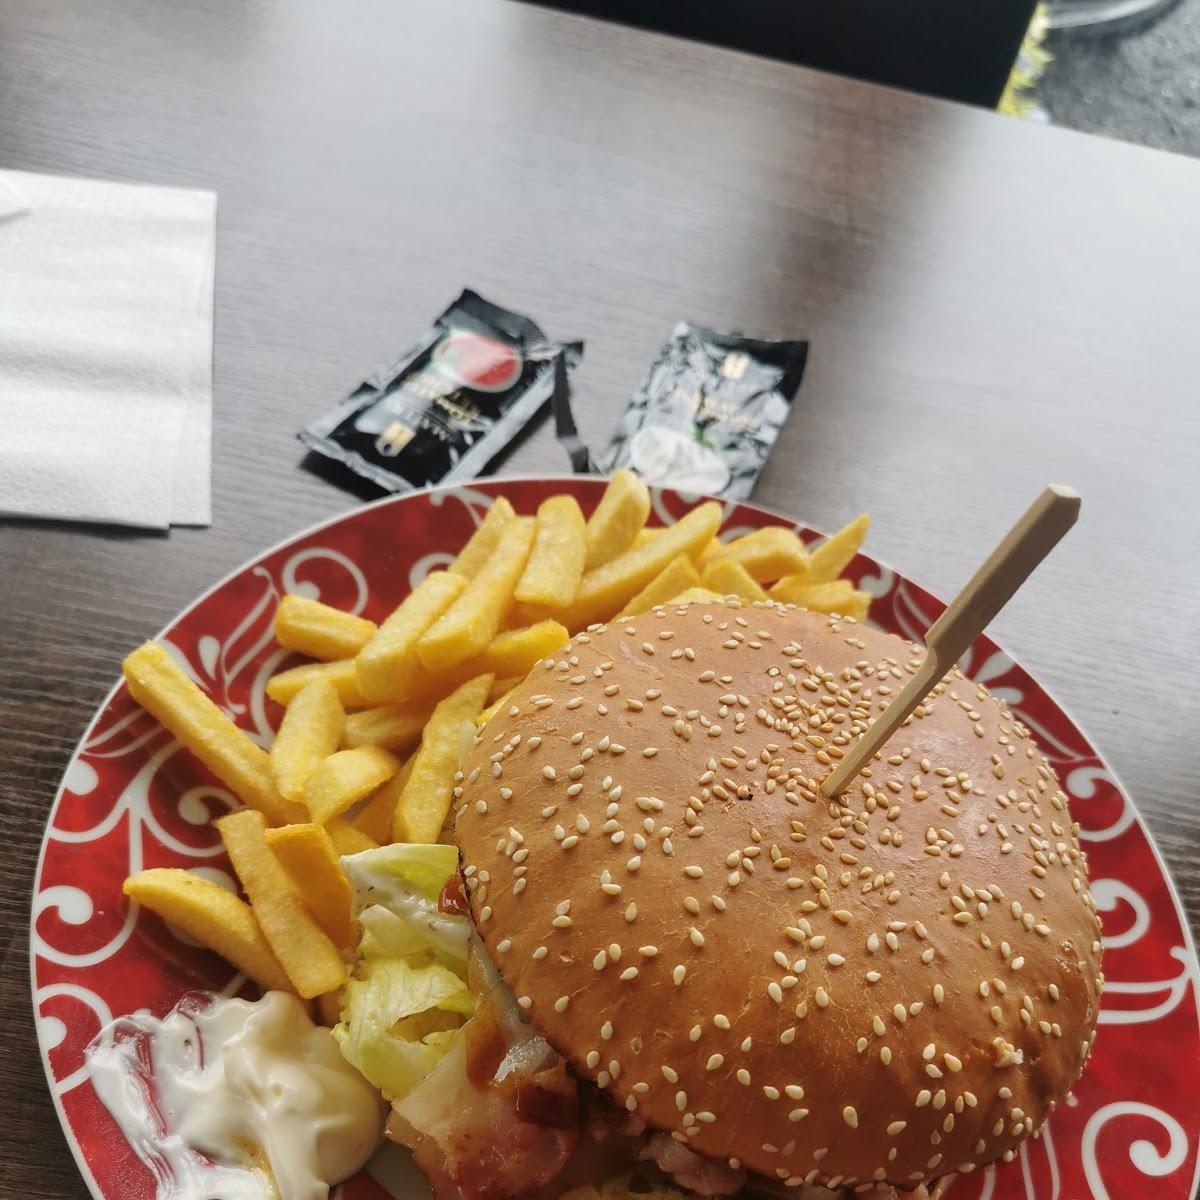 Restaurant "Bon Appetit" in Bad Wildungen